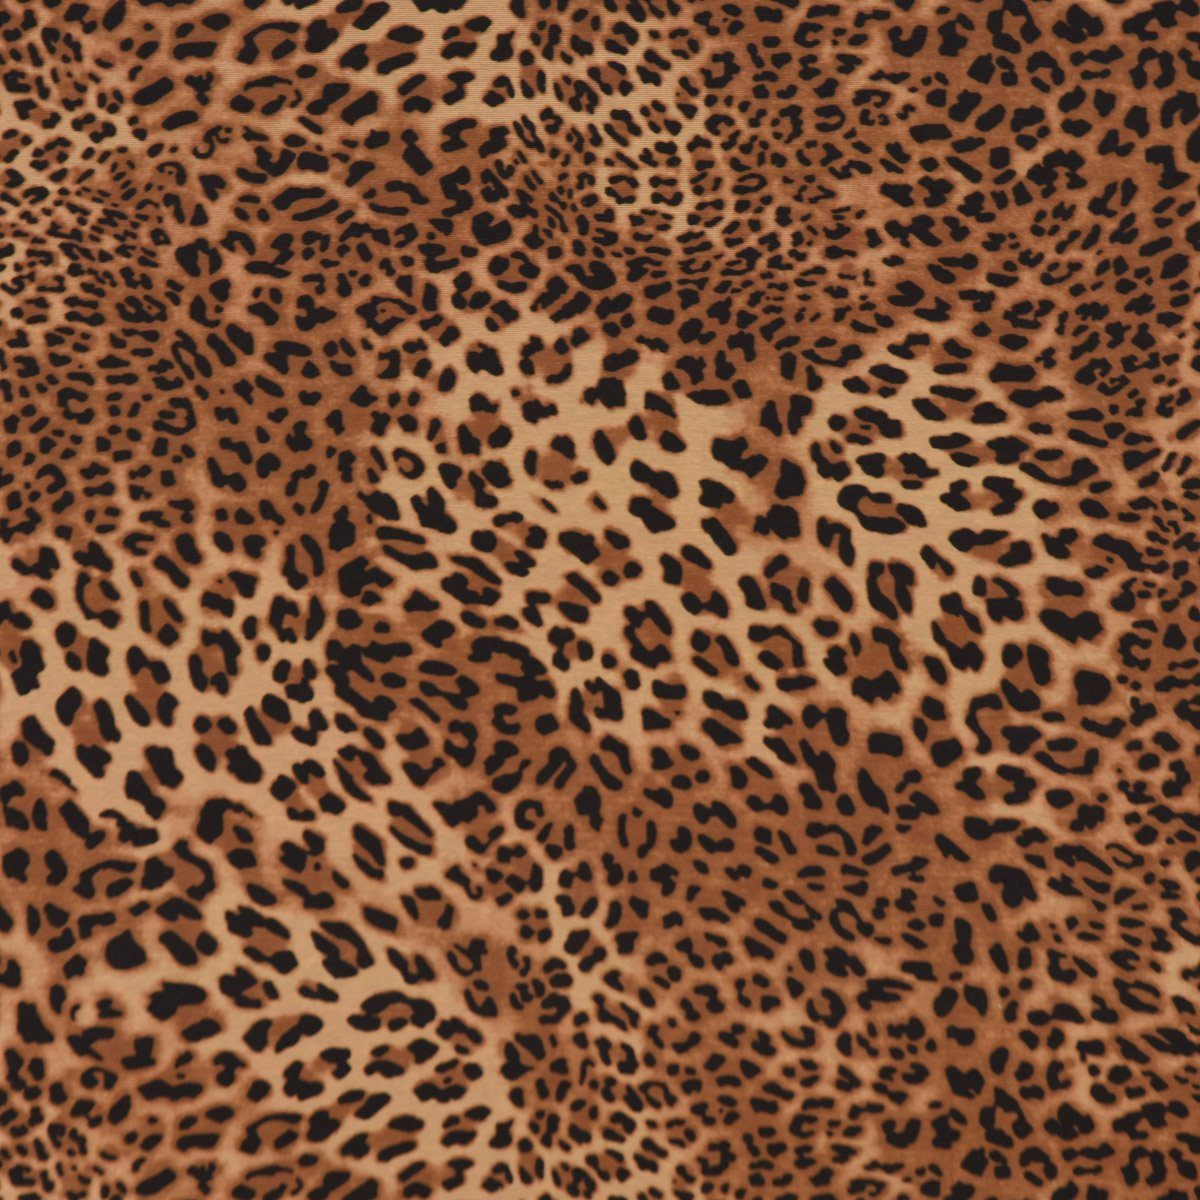 SCHÖNER LEBEN. Tischdecke SCHÖNER LEBEN. div. braun Größen, Tischdecke Leopardenhaut Leo-Skin handmade